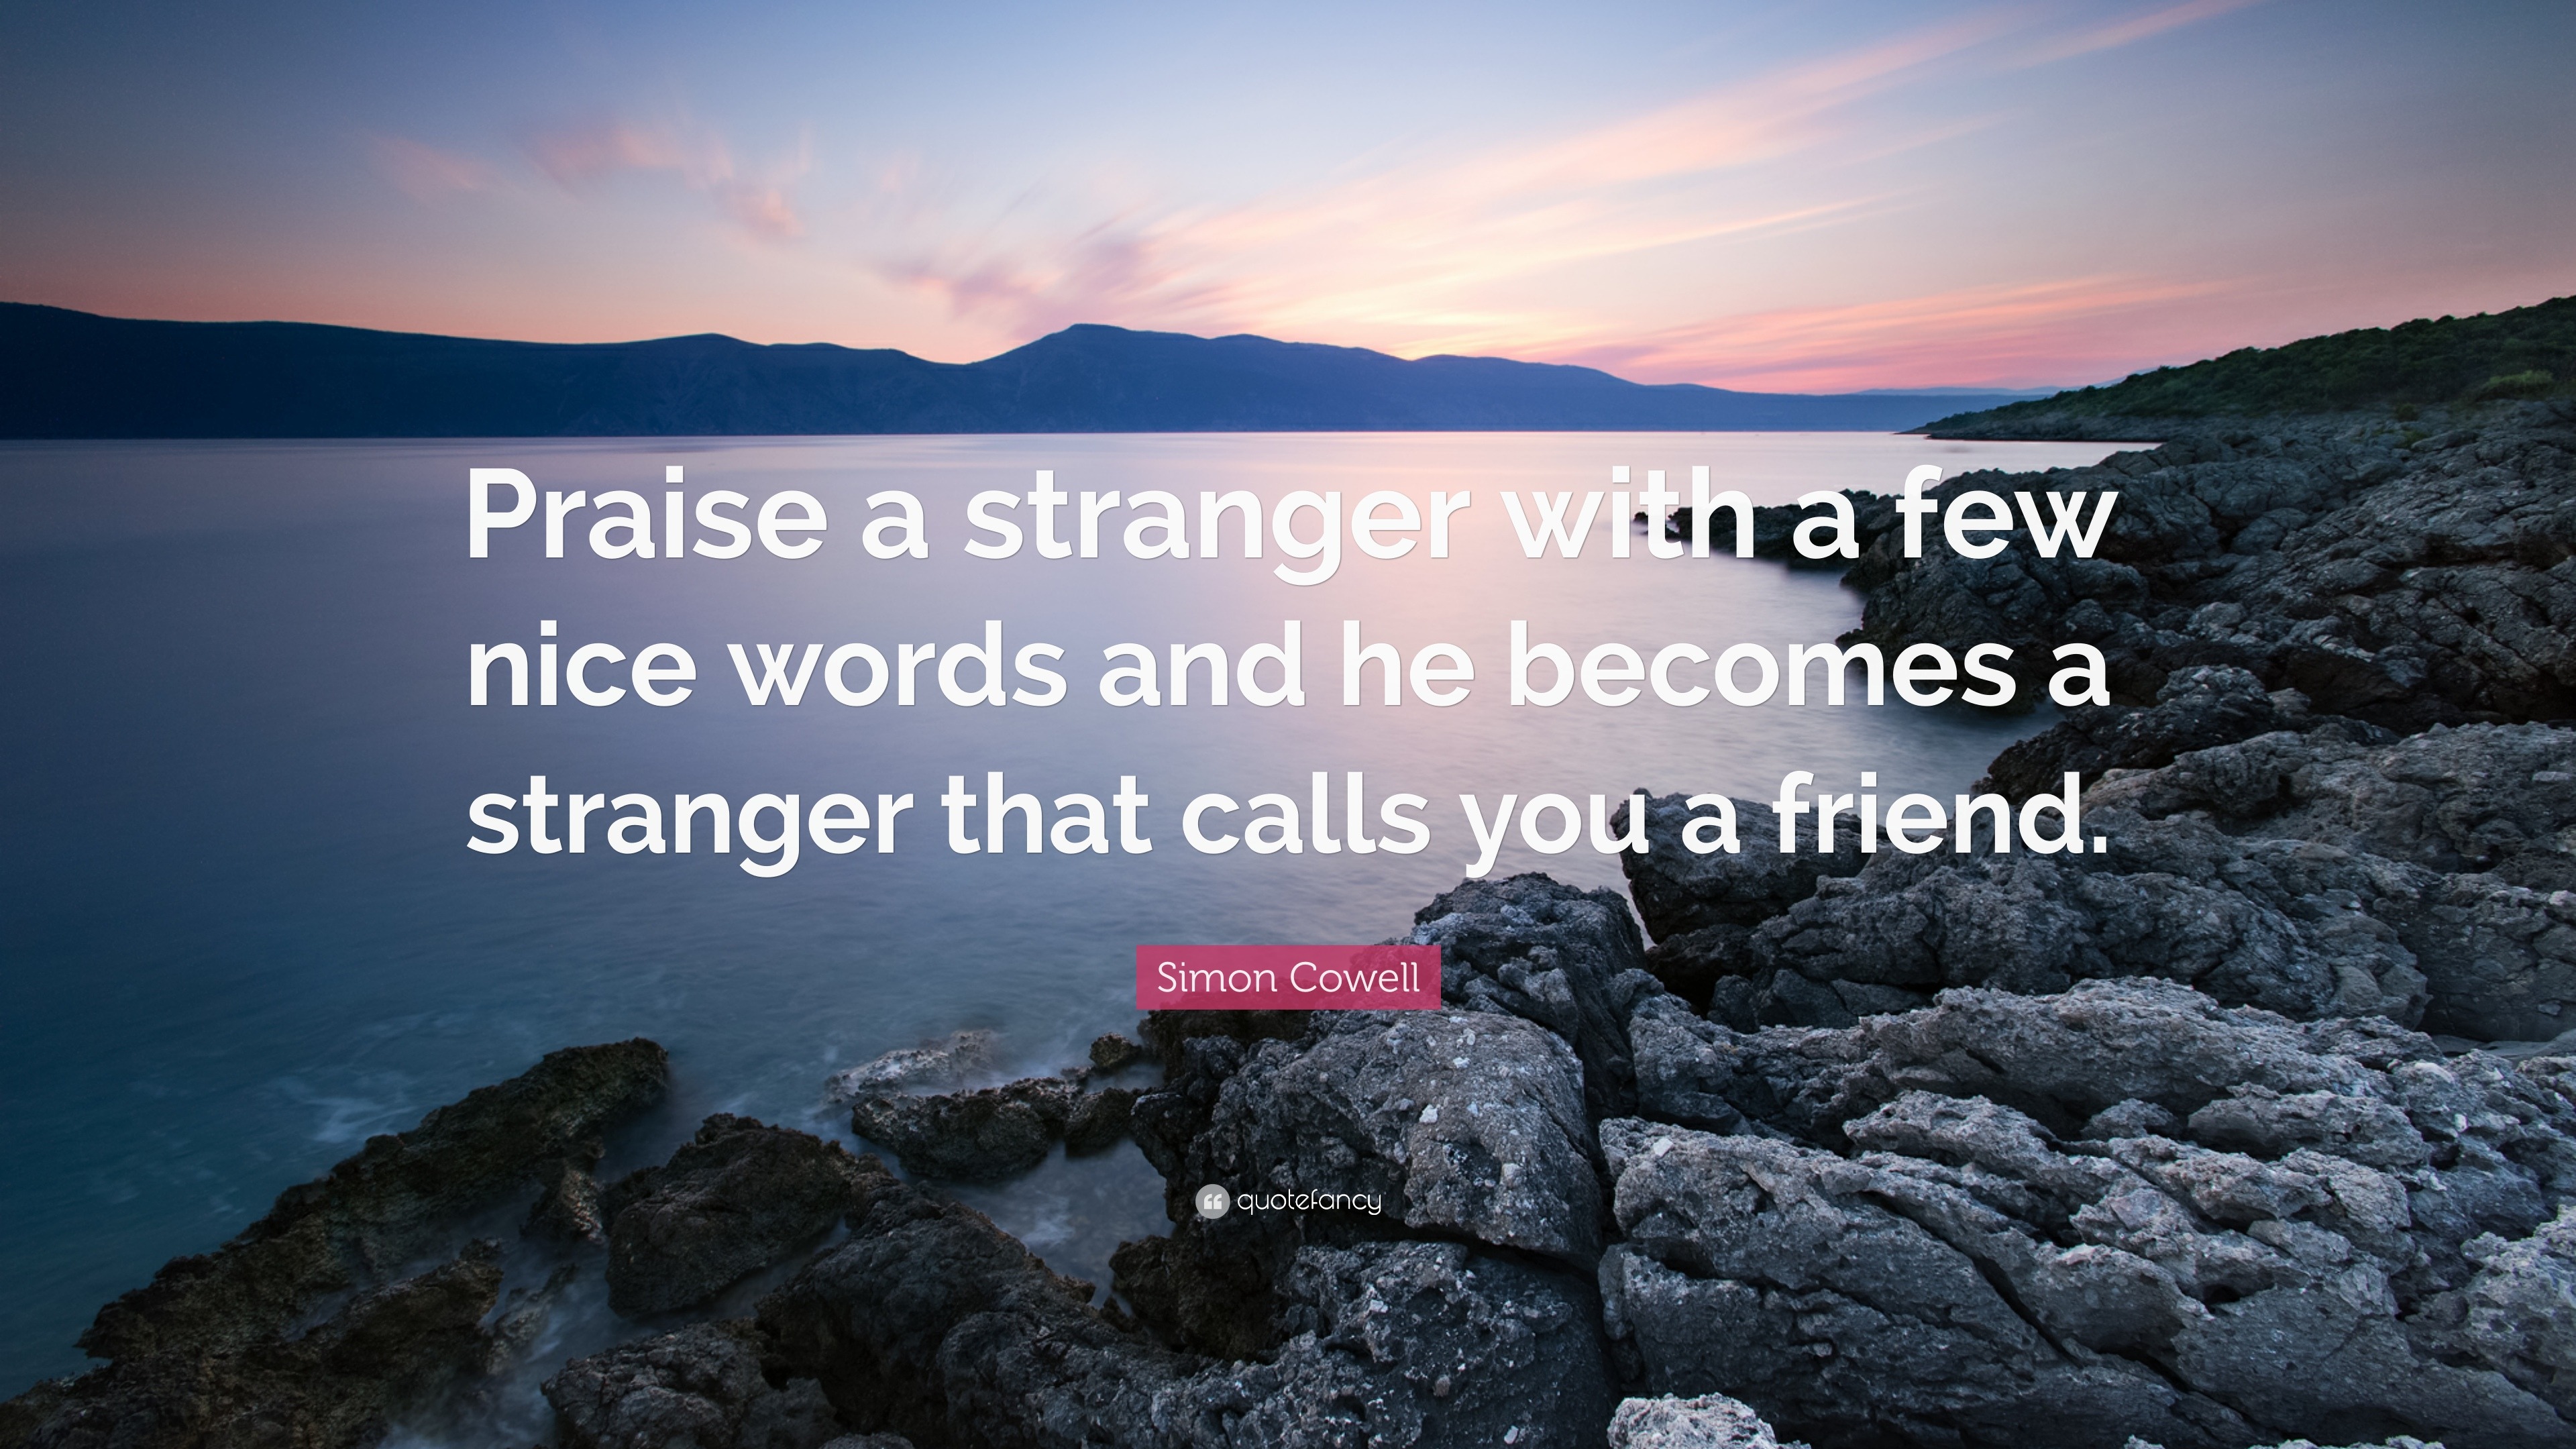 words against strangers